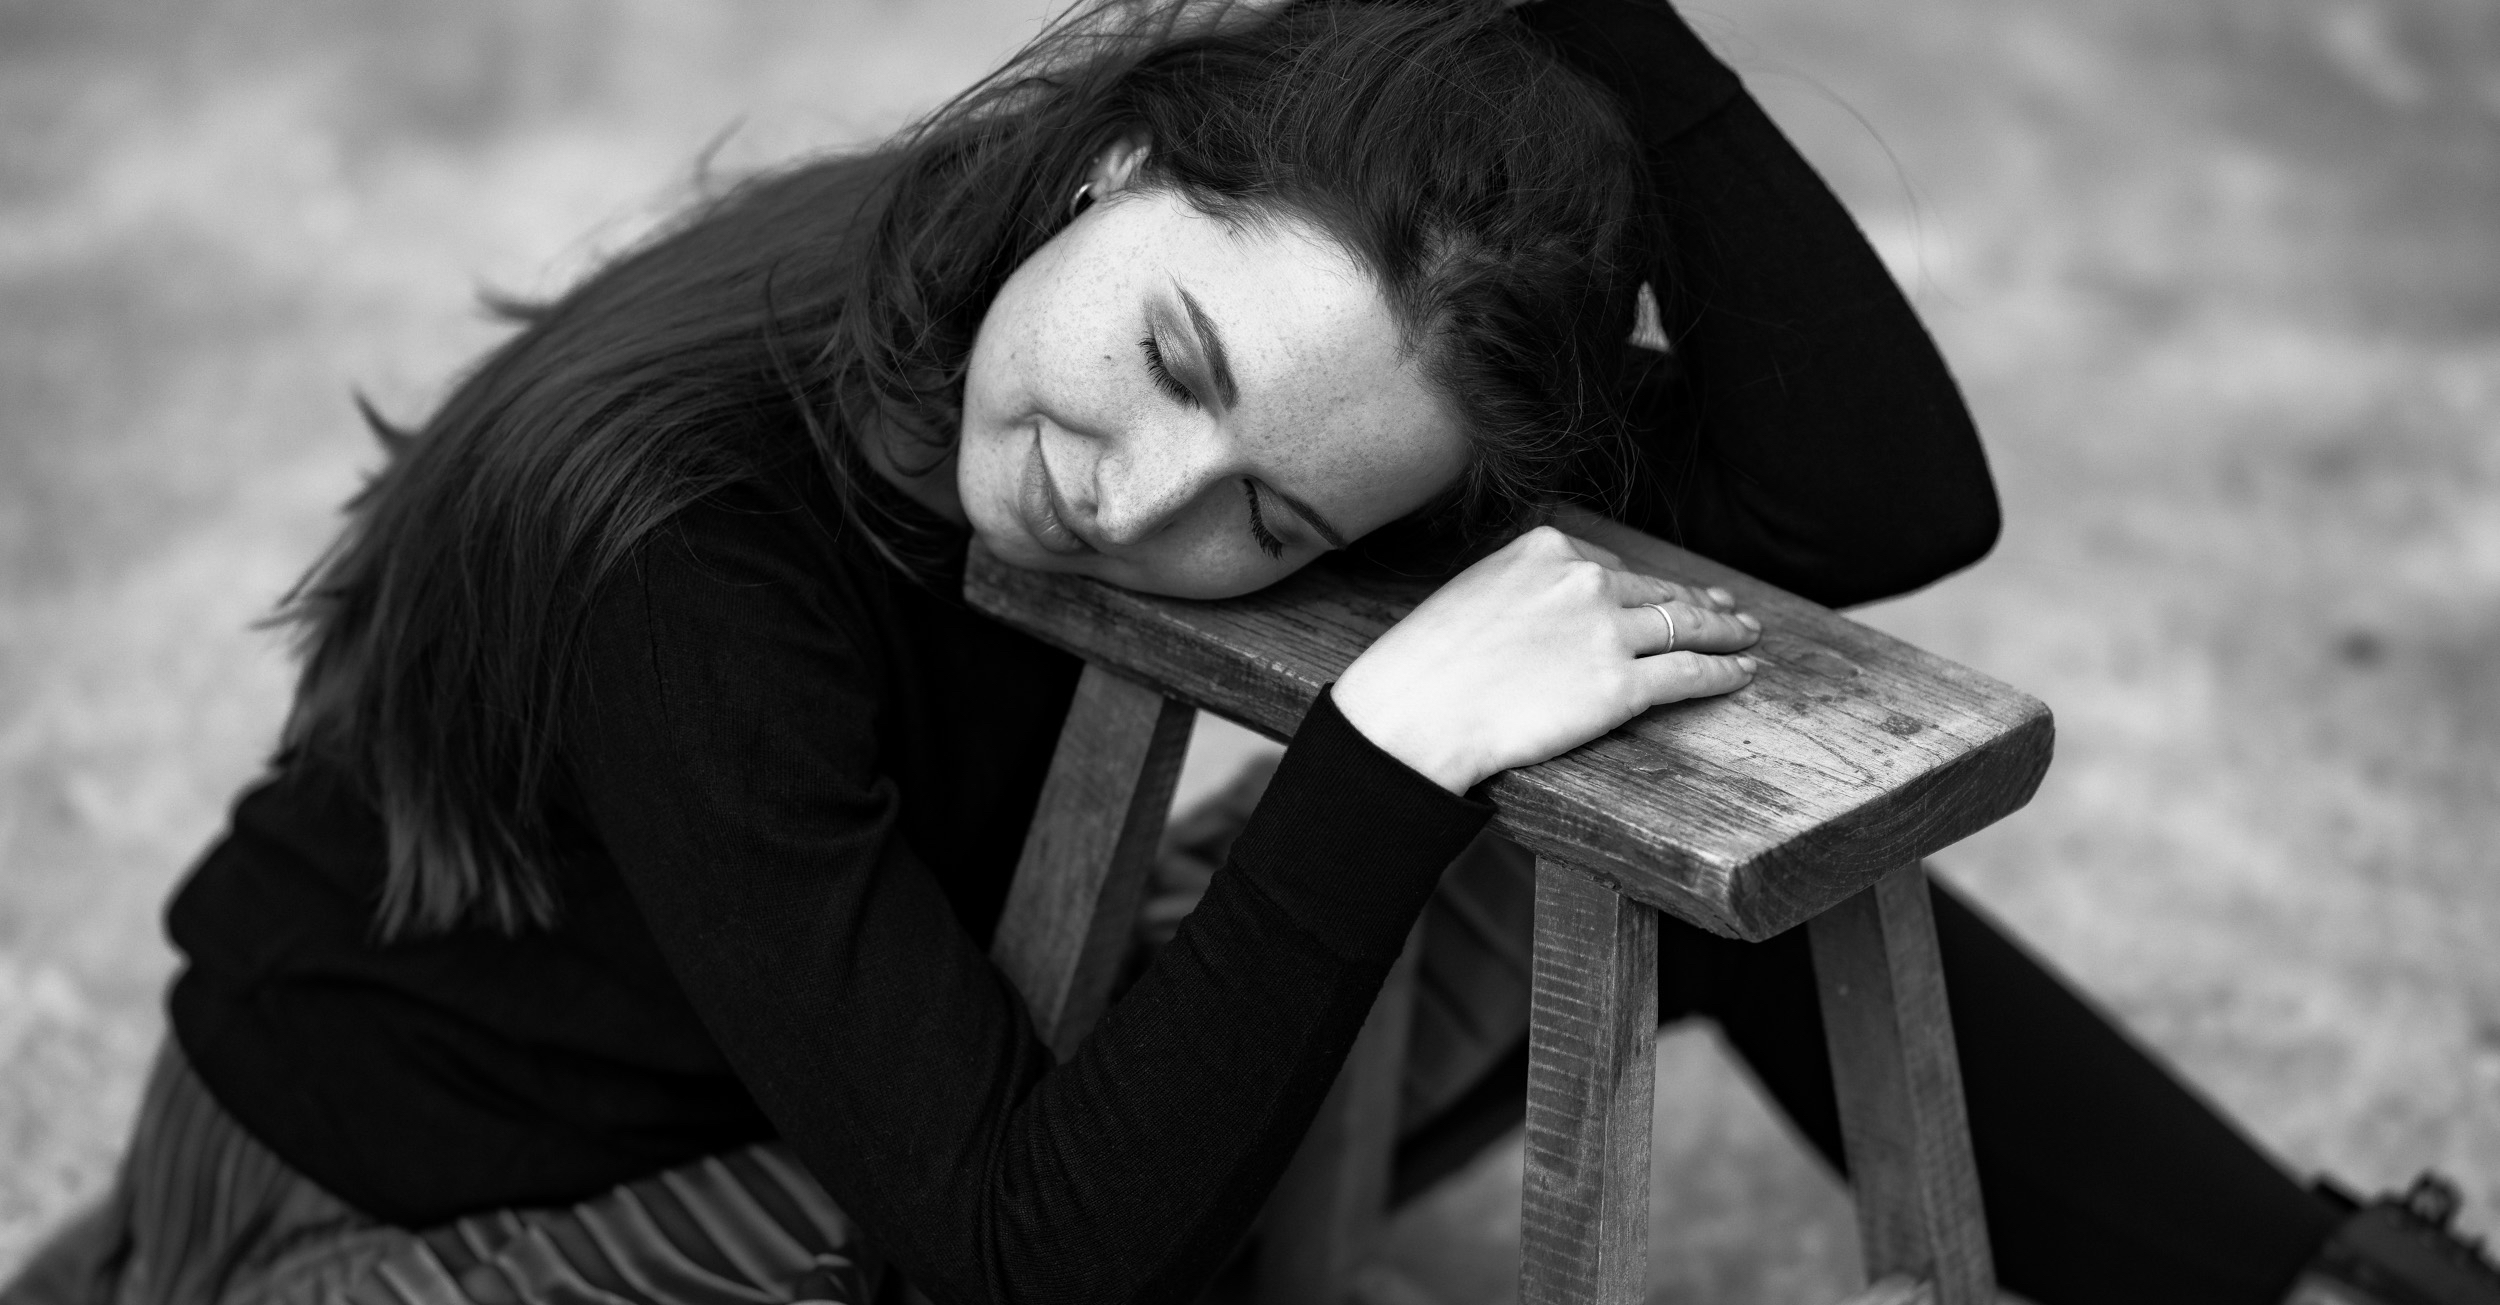 Schwarz weiß Foto von Kristin auf dem Boden sitzend den Kopf auf einen Hocker gelegt die Augen geschlossen Outdoor in Hannover.